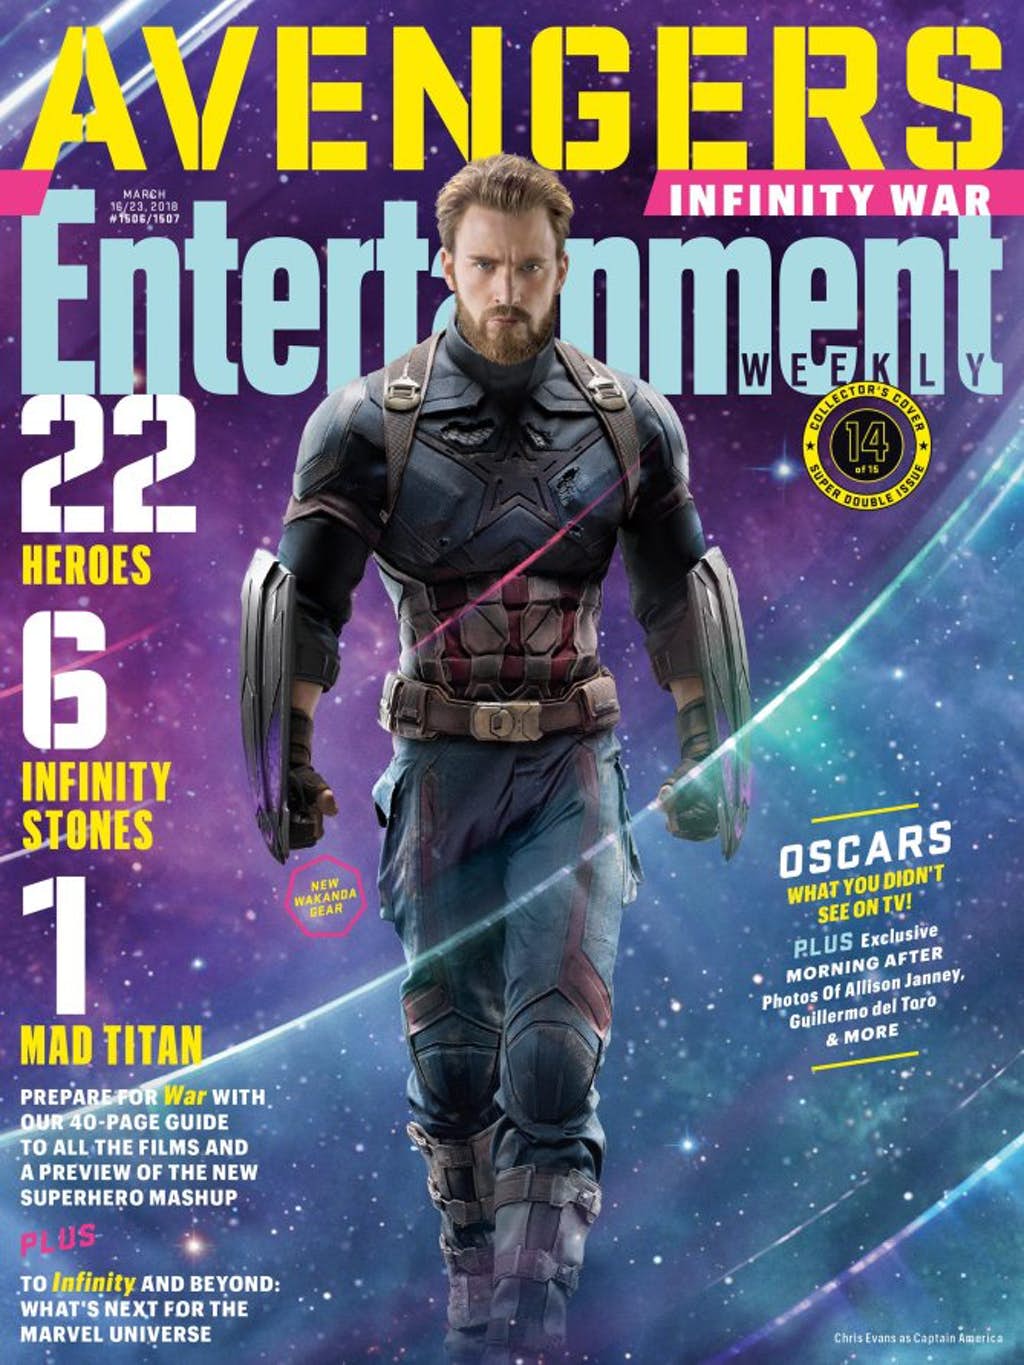 Captain-America-EW-cover.jpg